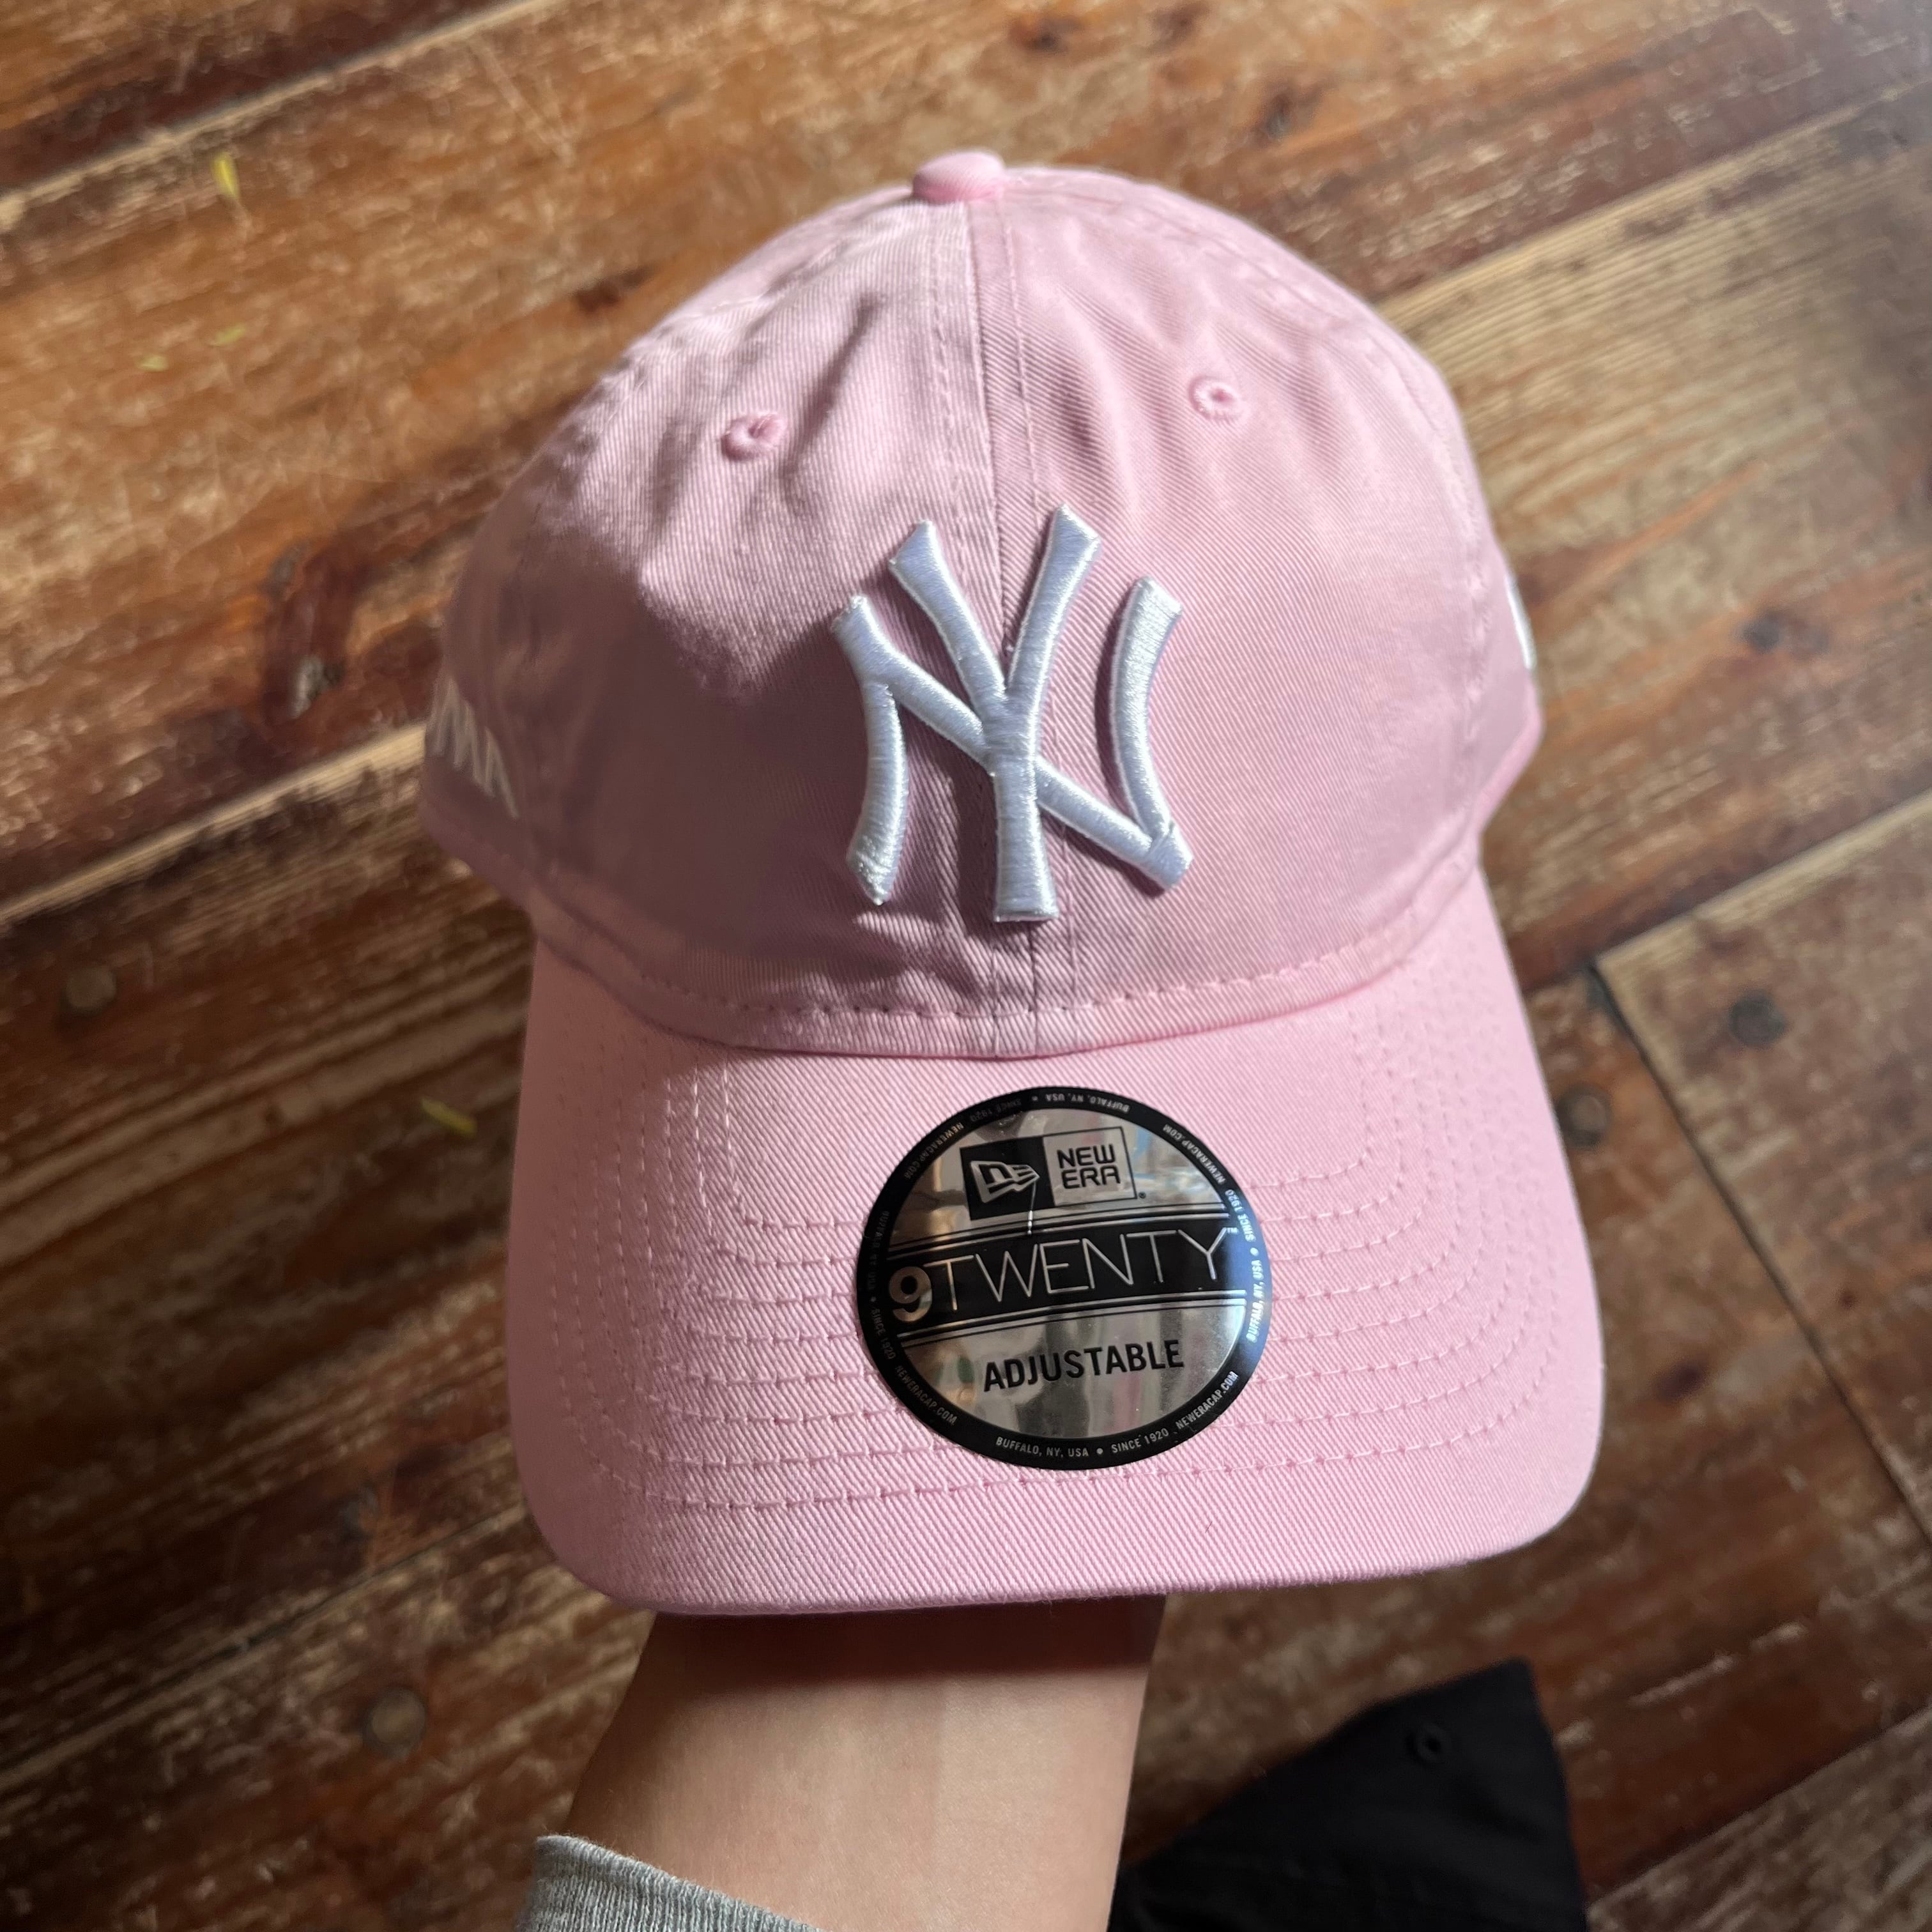 MOMA x New Era ”NY Yankees” ”NY Mets” Baseball Cap | Rei-mart